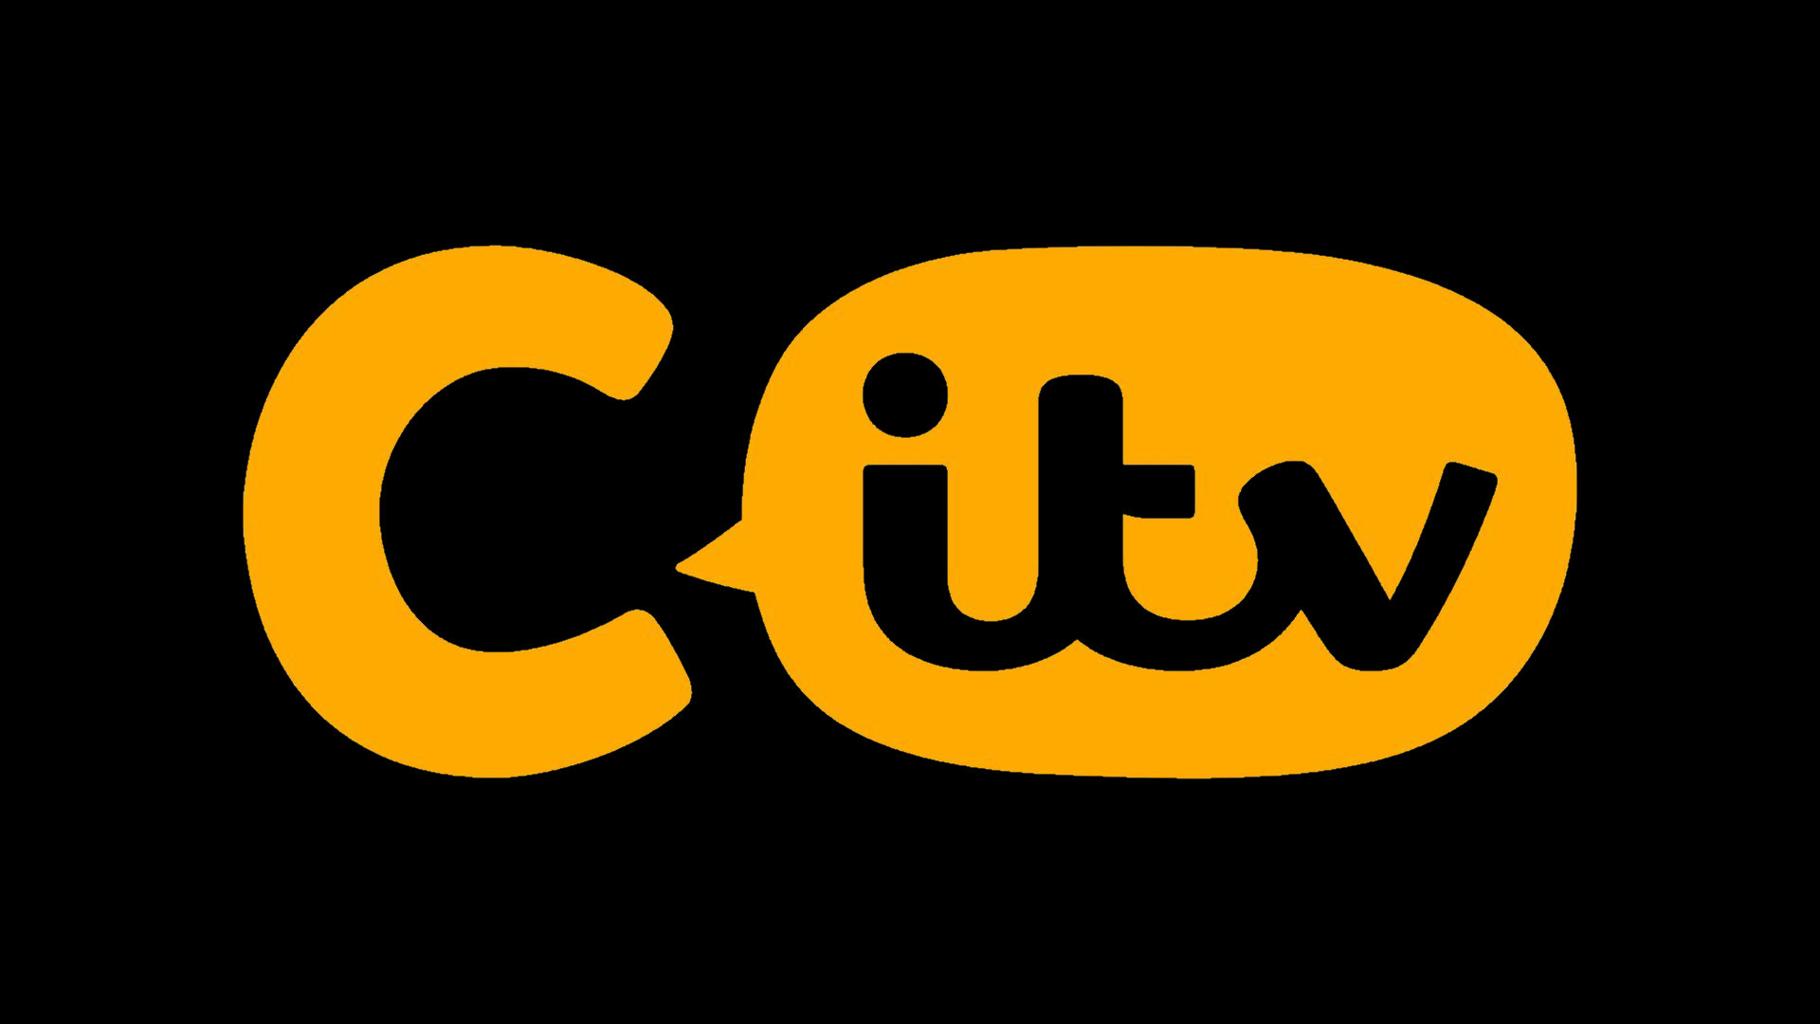 CITV logo against black background